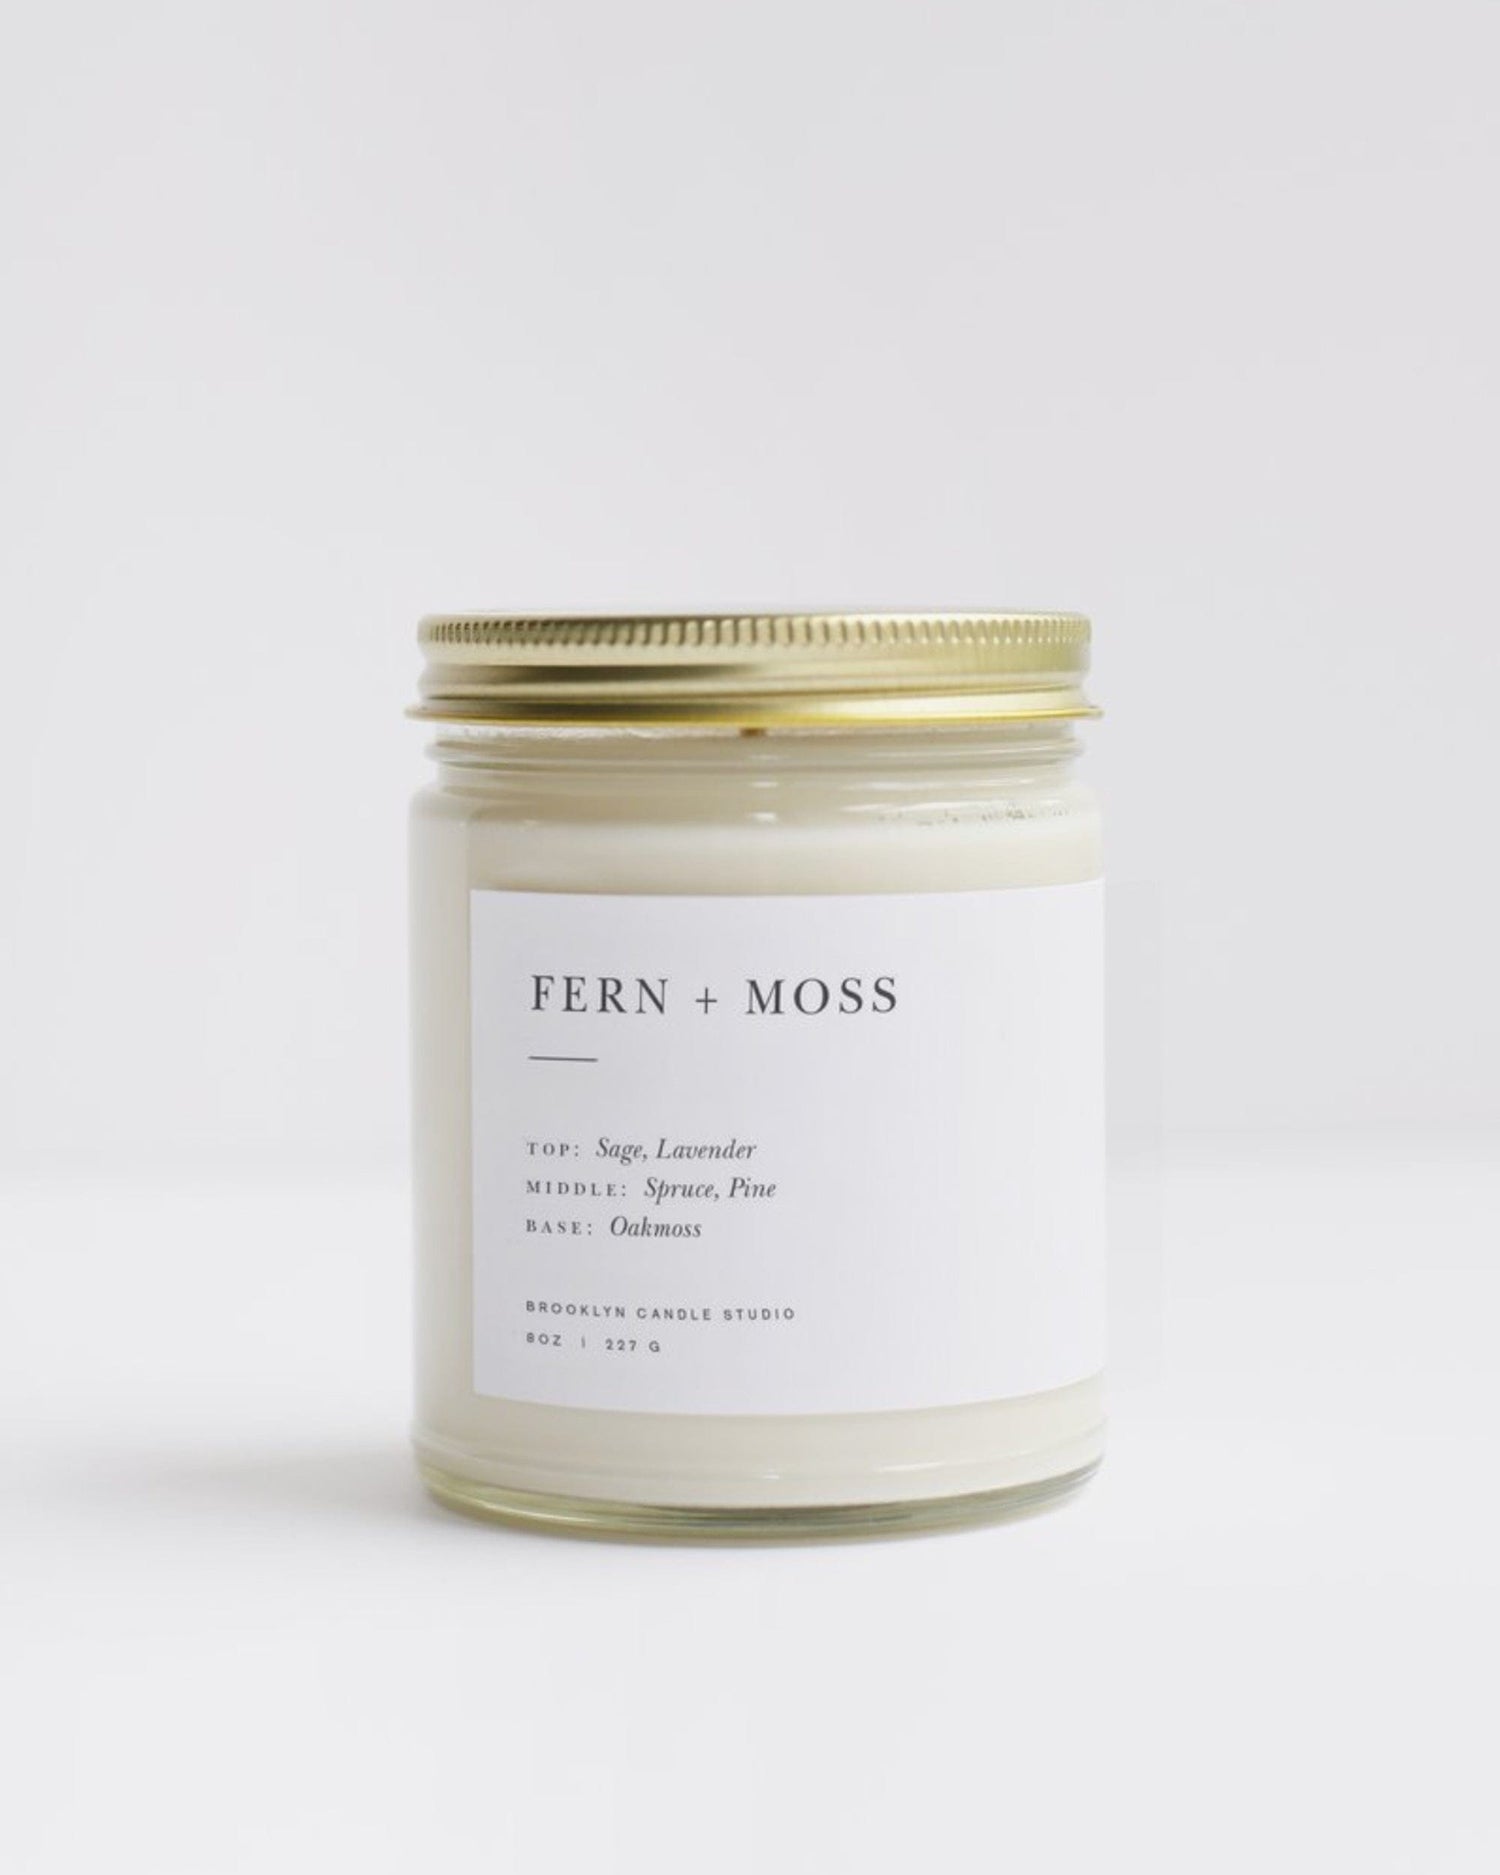 Fern + Moss Minimalist Candle